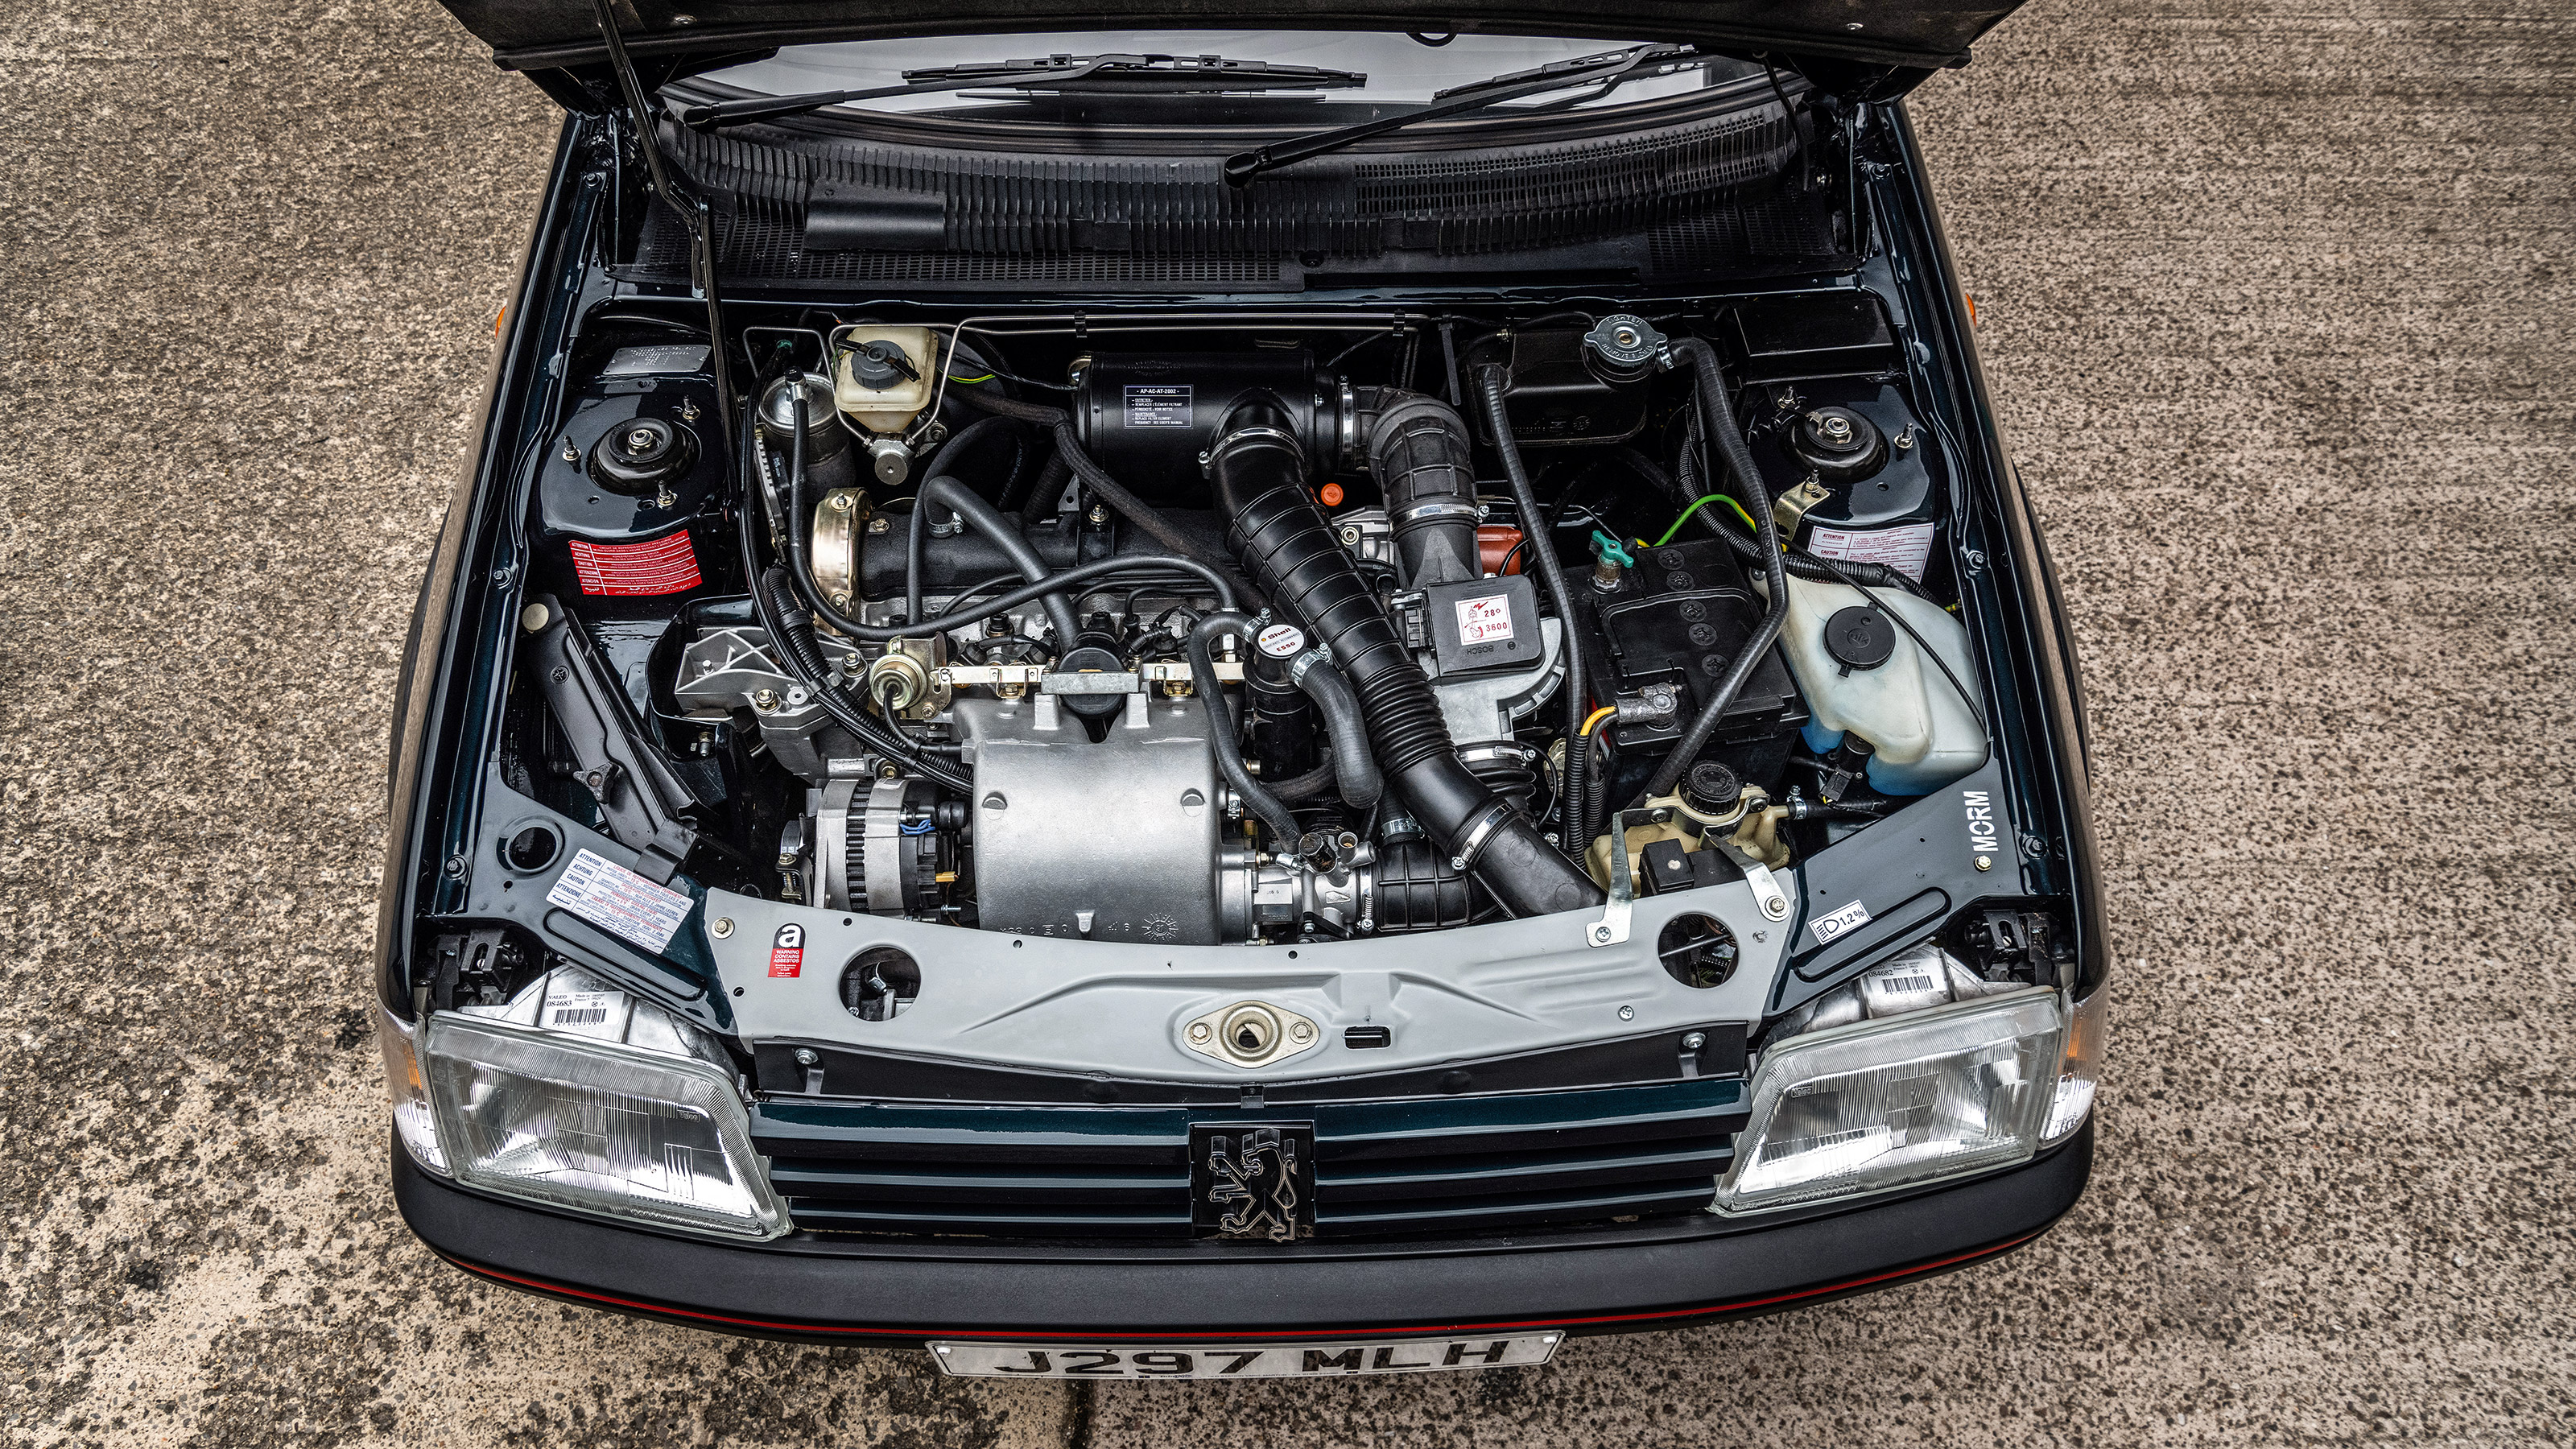 Peugeot 205 GTI Tolman : Plus puissante et mieux finie que l'originale !